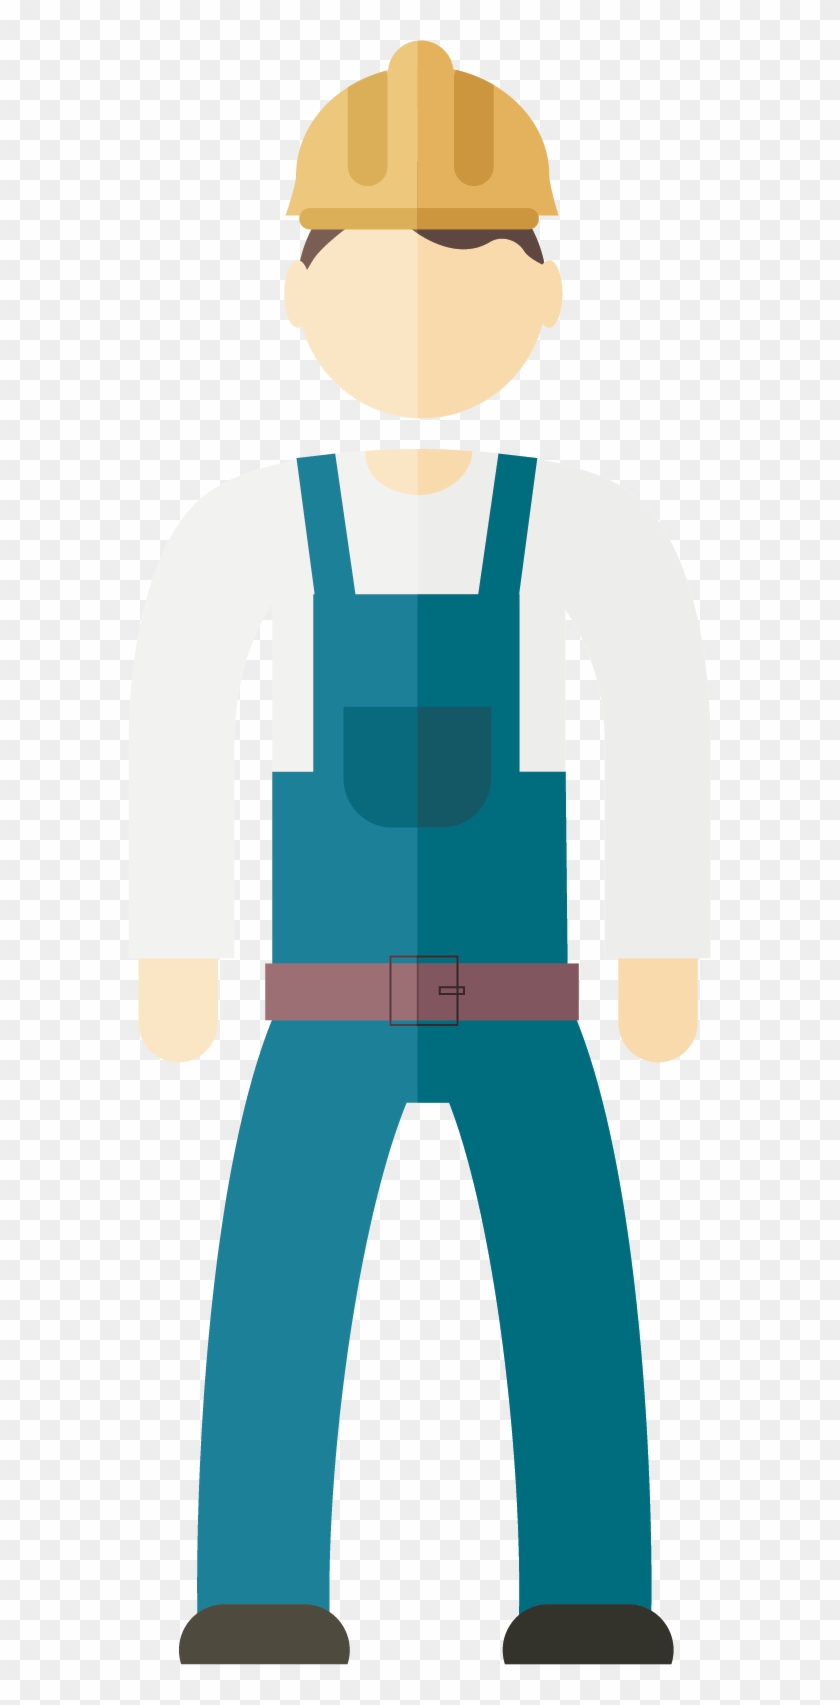 Laborer Construction Worker Illustration - Laborer Construction Worker Illustration #293305